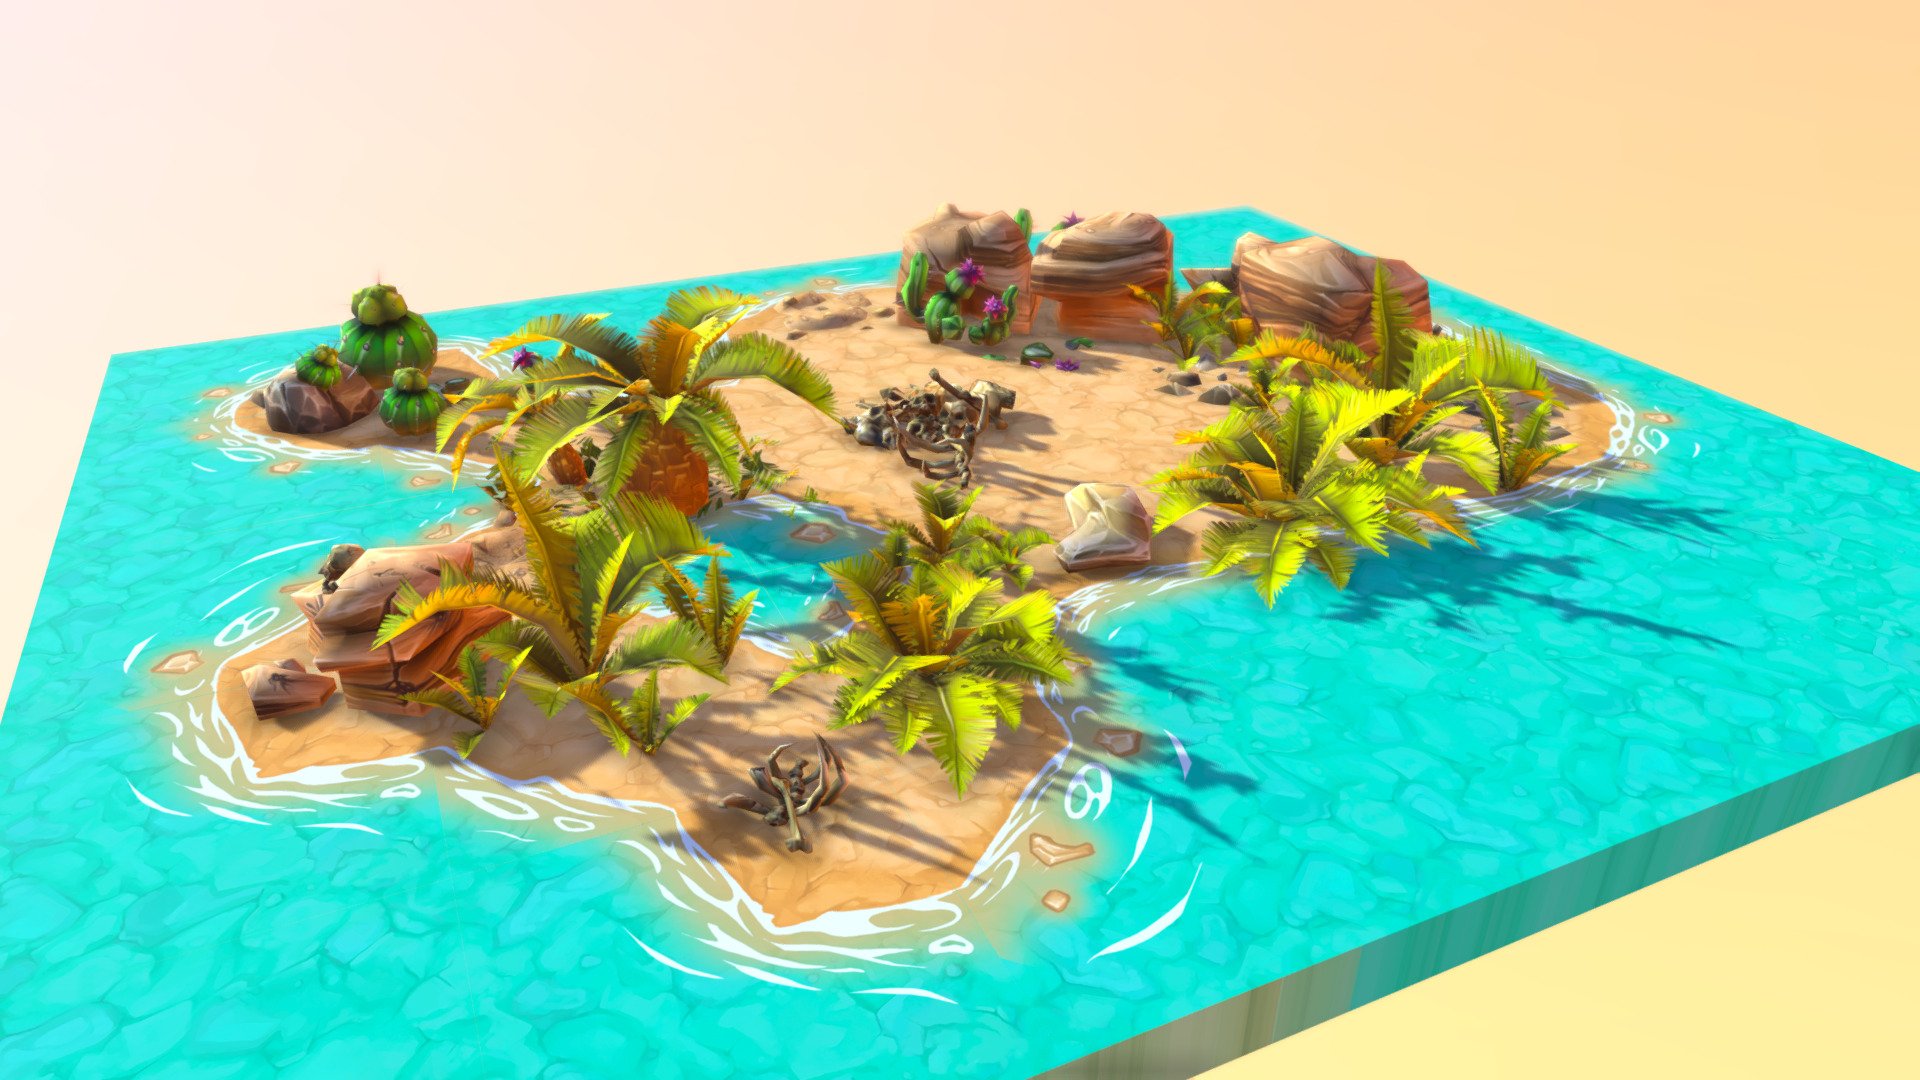 Nature environment for Warmageddon game - Desert environment - 3D model by Vizzir 3d model